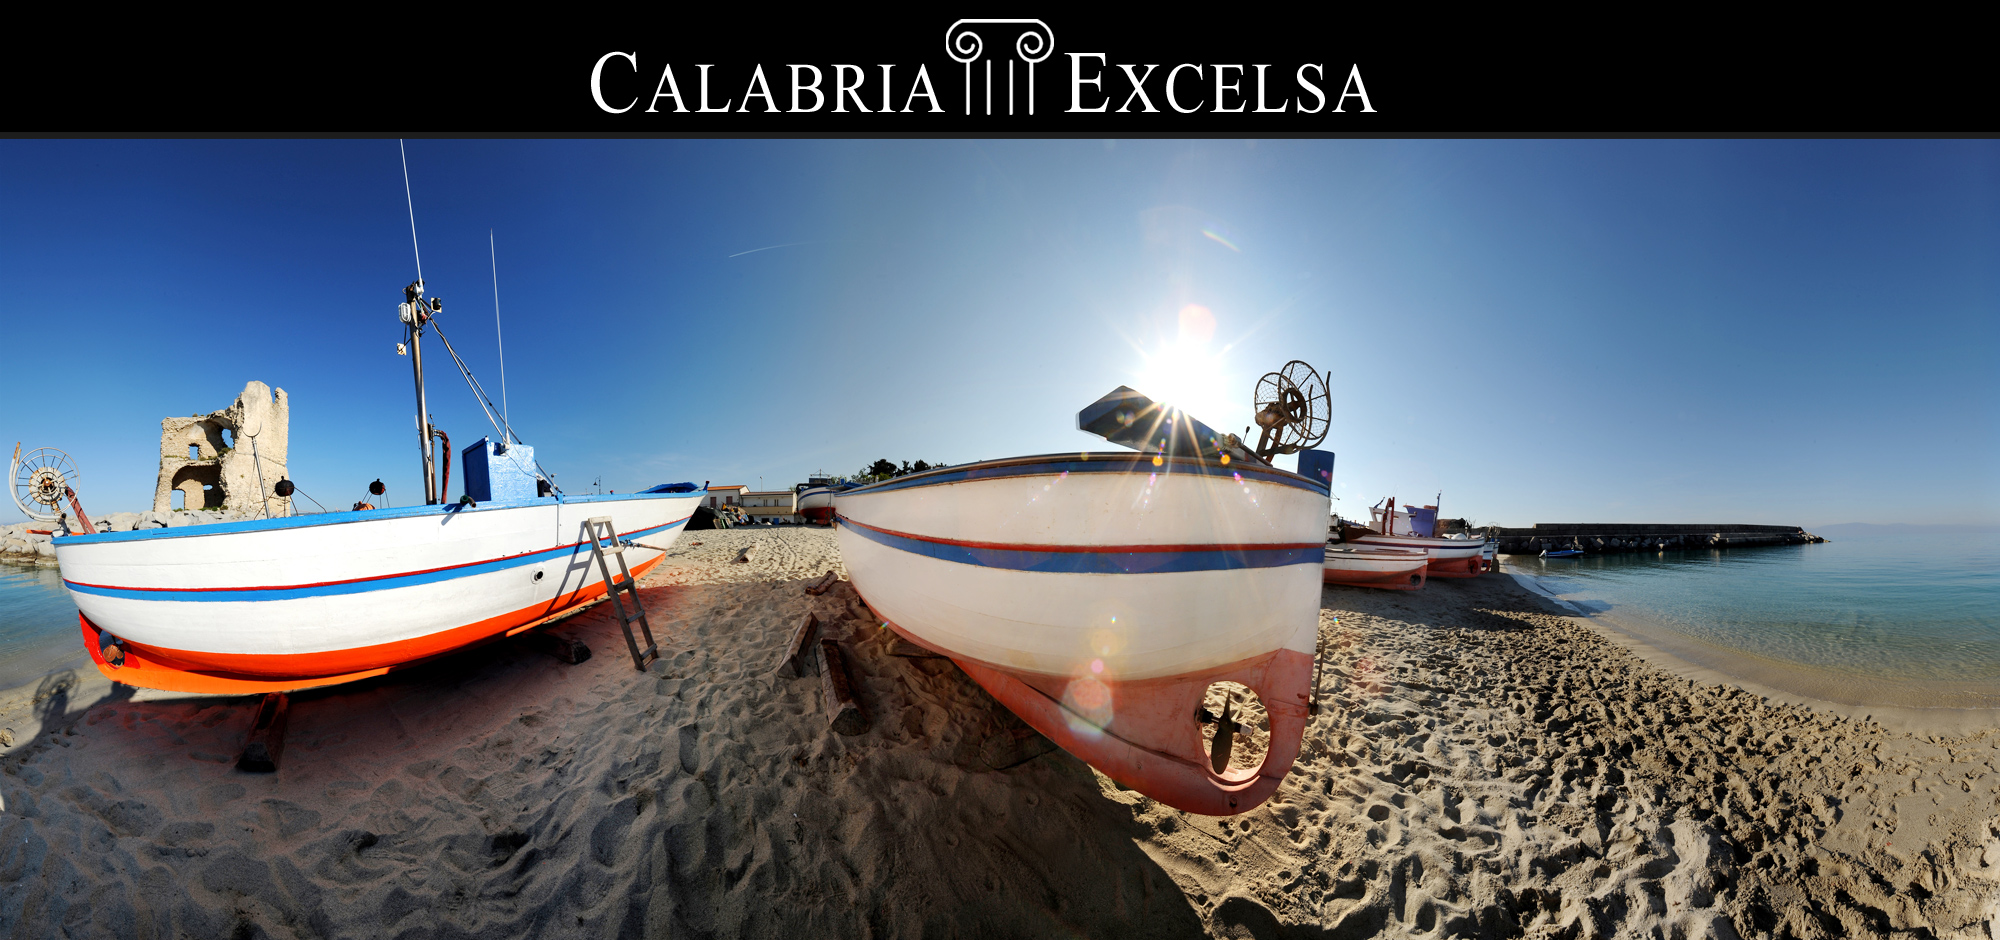 Calabria Excelsa - Briatico